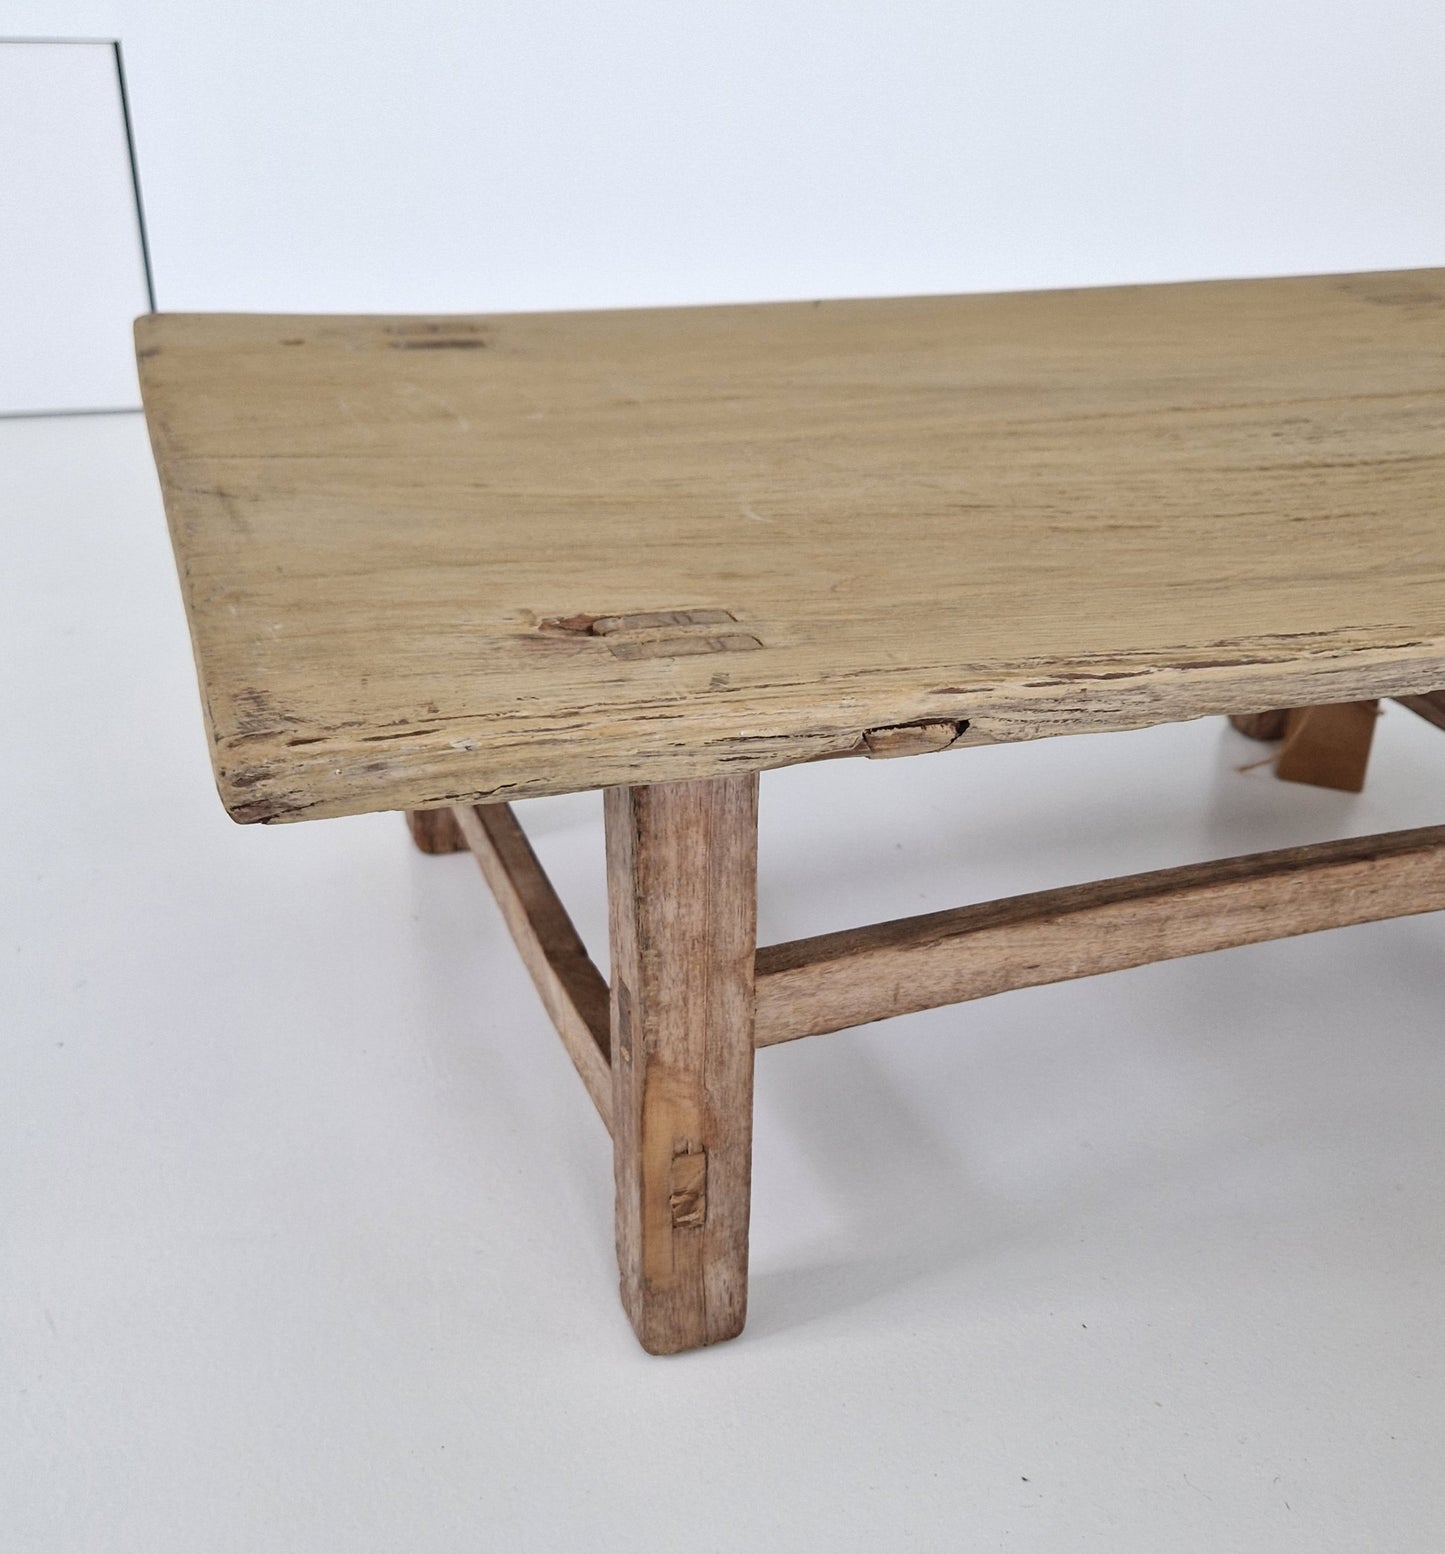 Chinees oud houten tafeltje #3 (80x49x27)